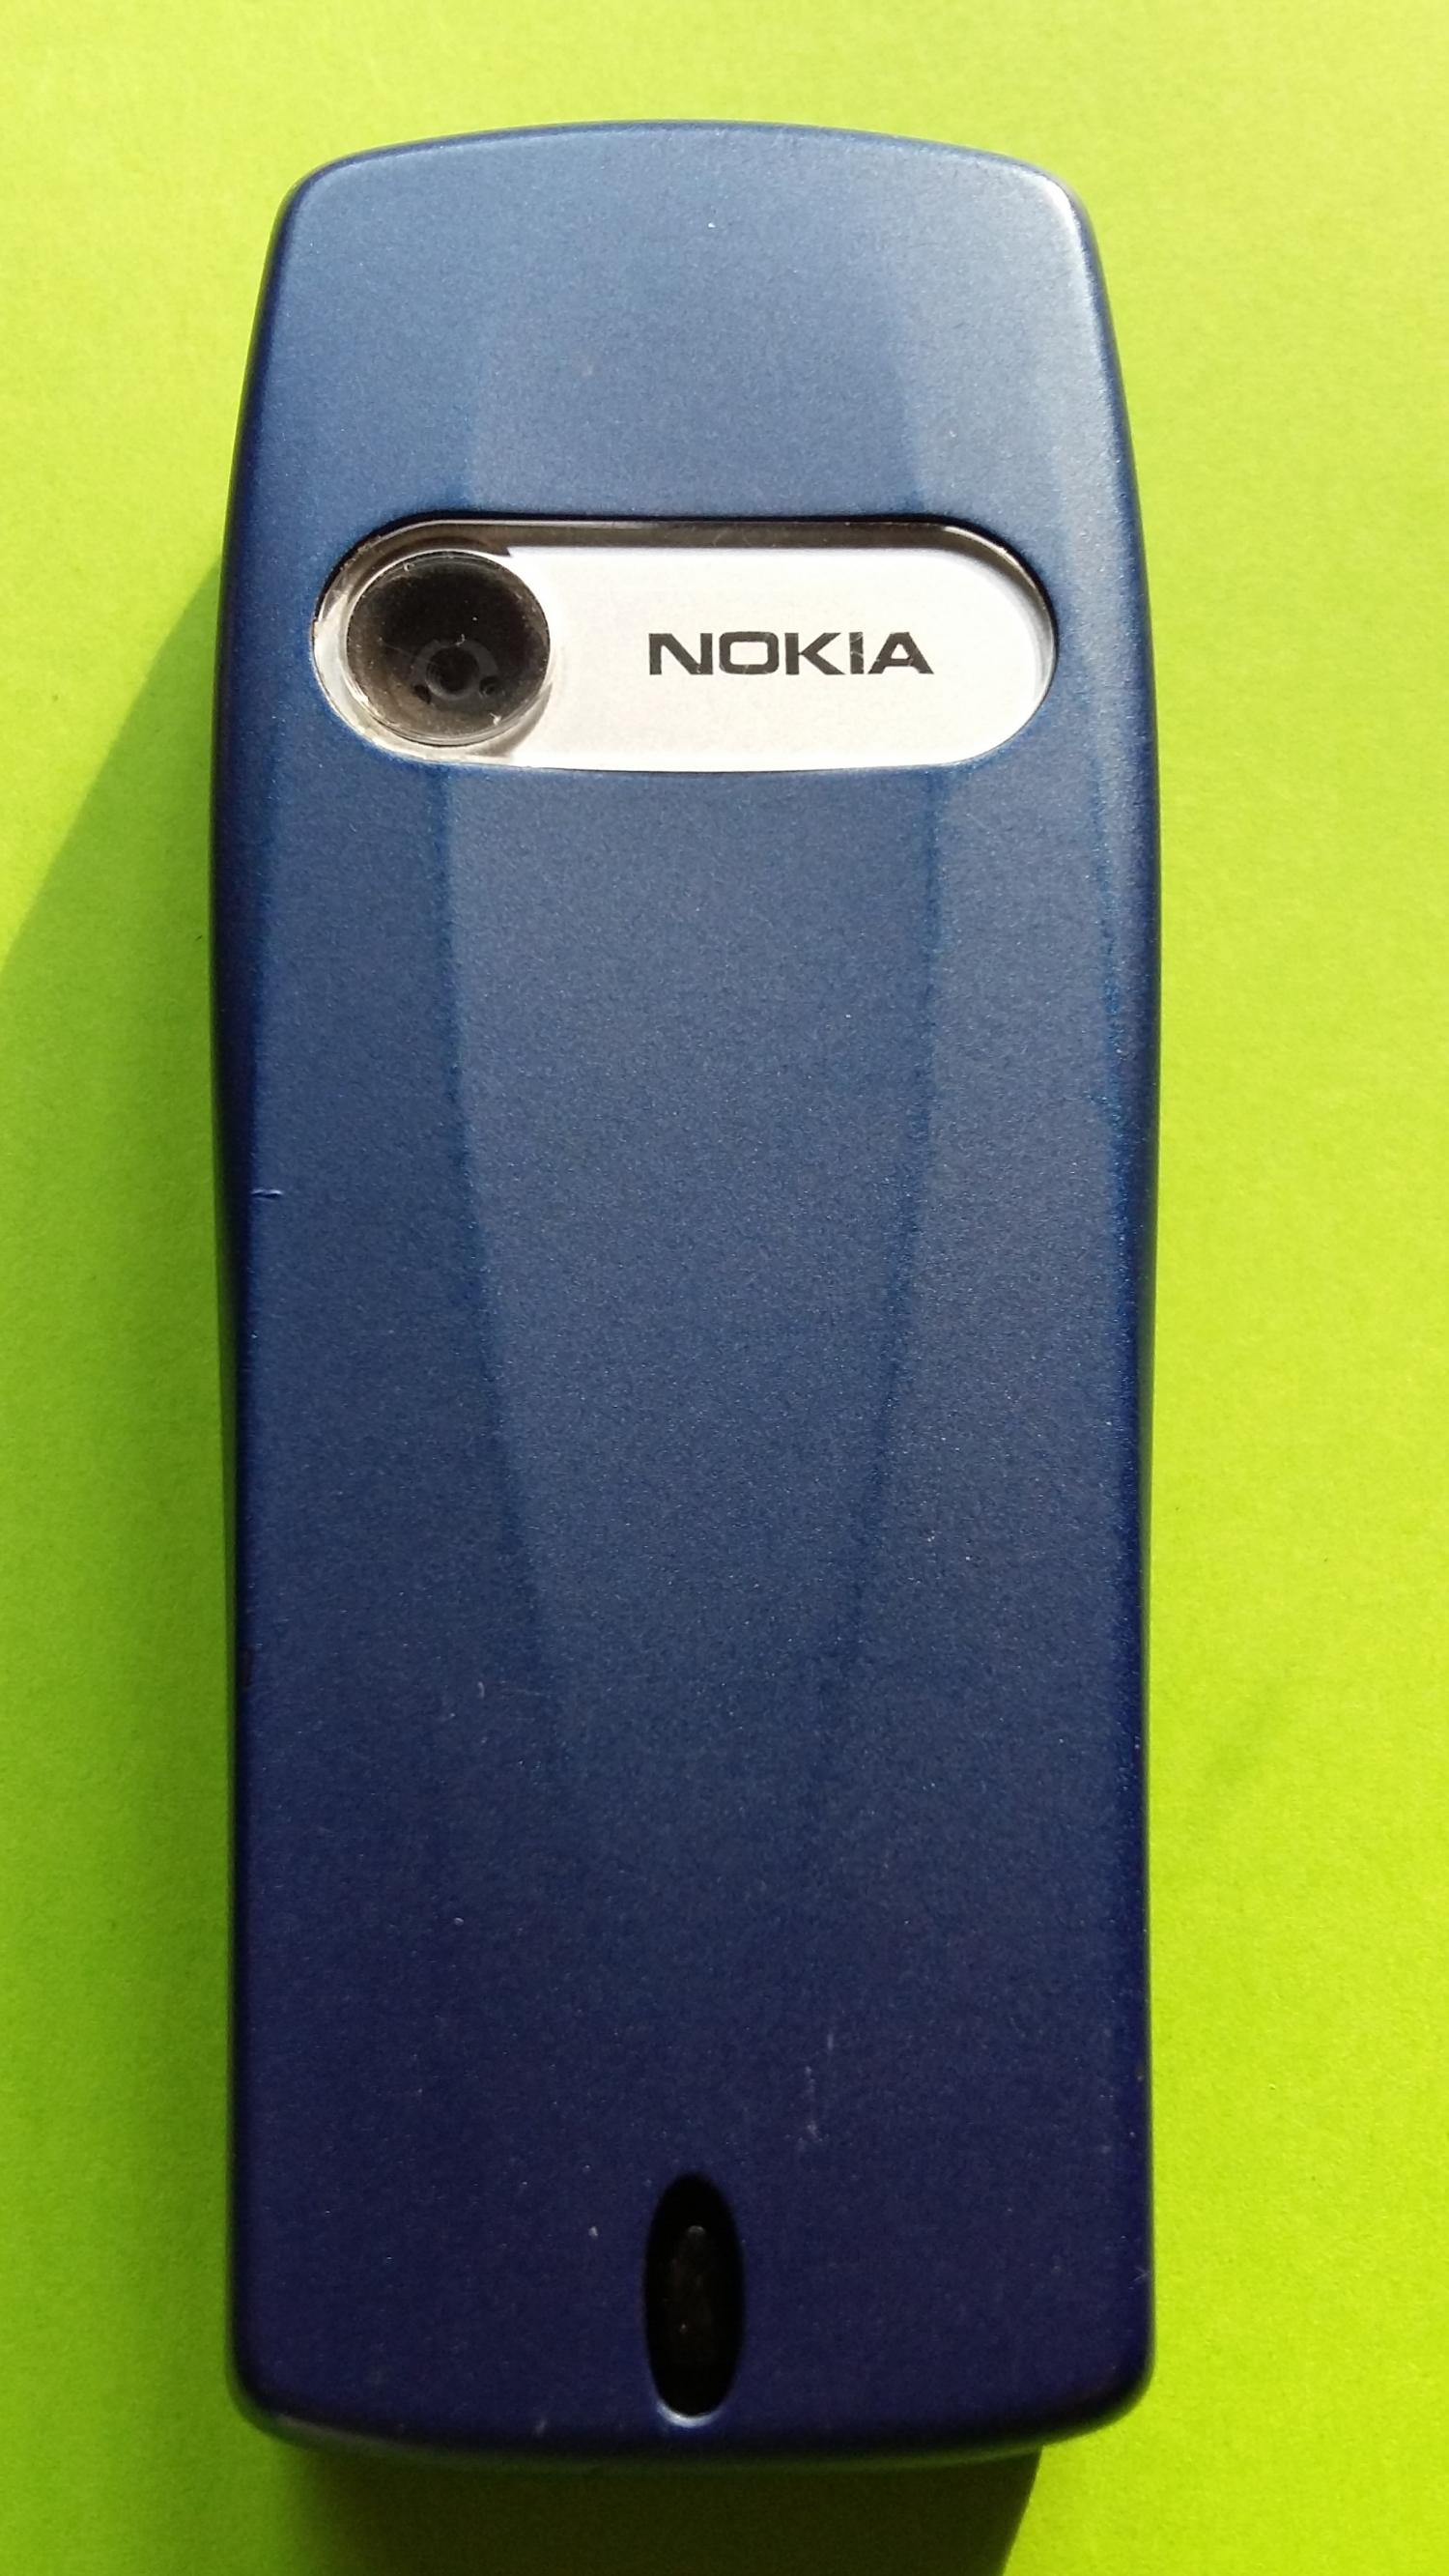 image-7336900-Nokia 6610i (9)2.jpg